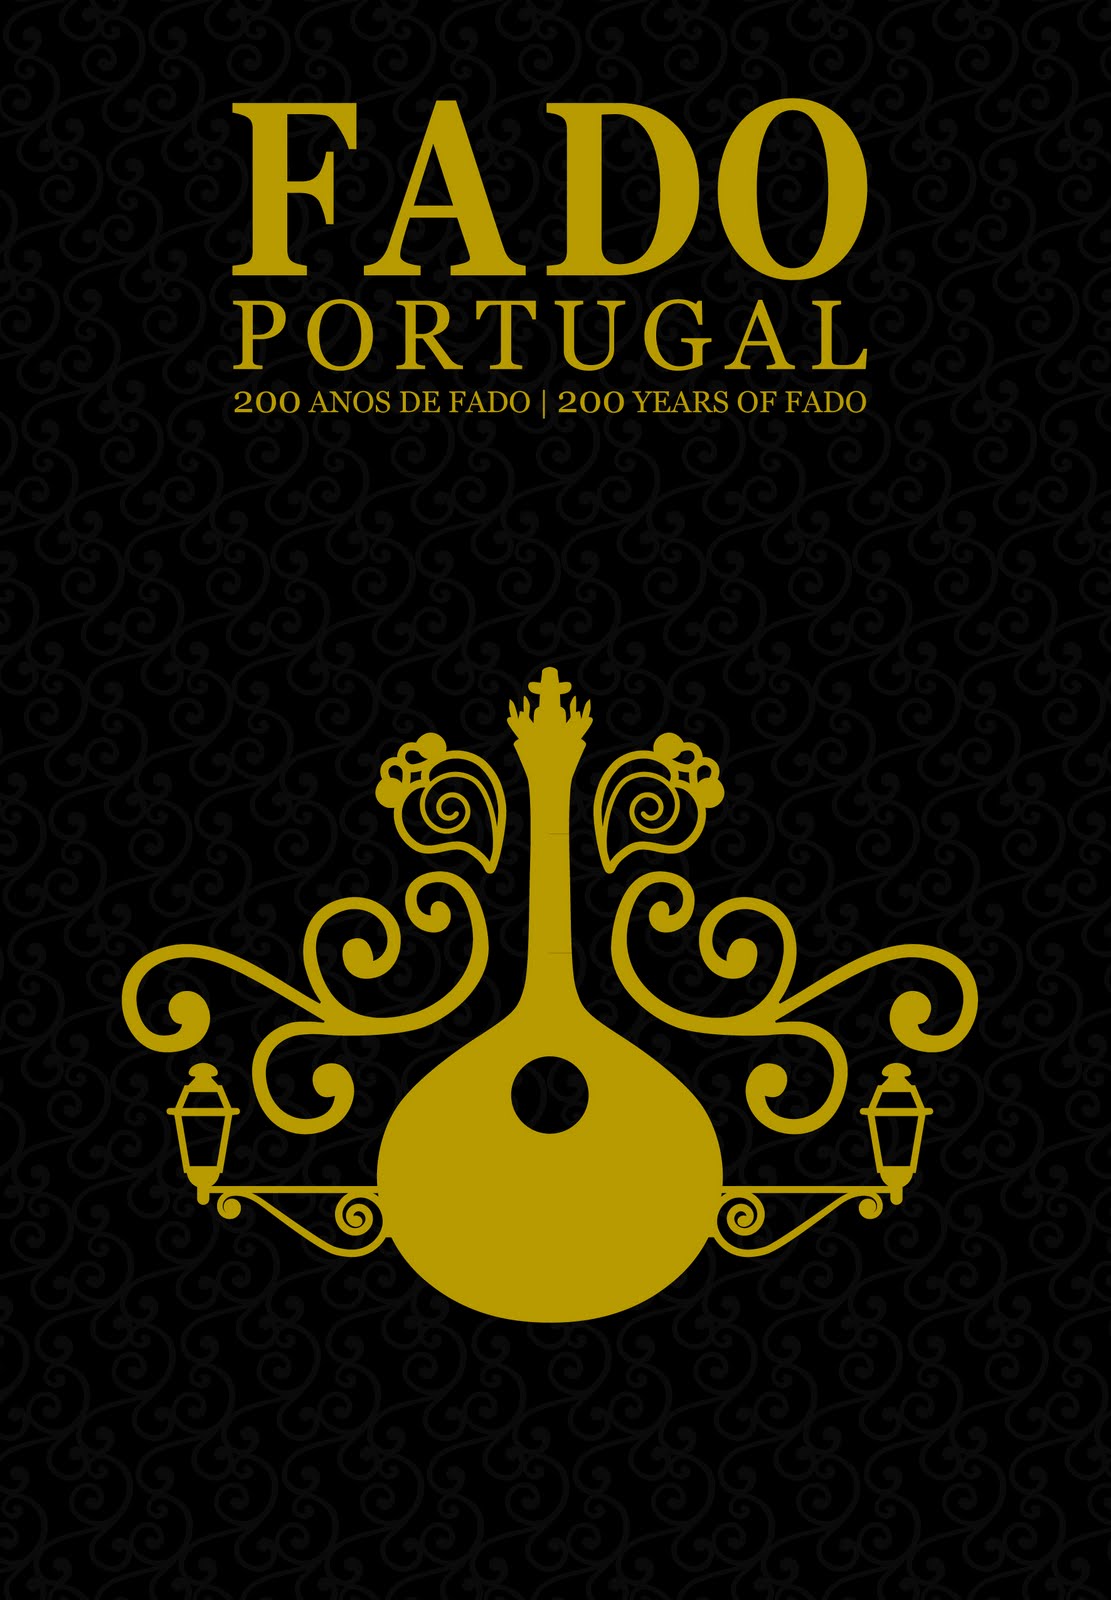 musica portuguesa fado